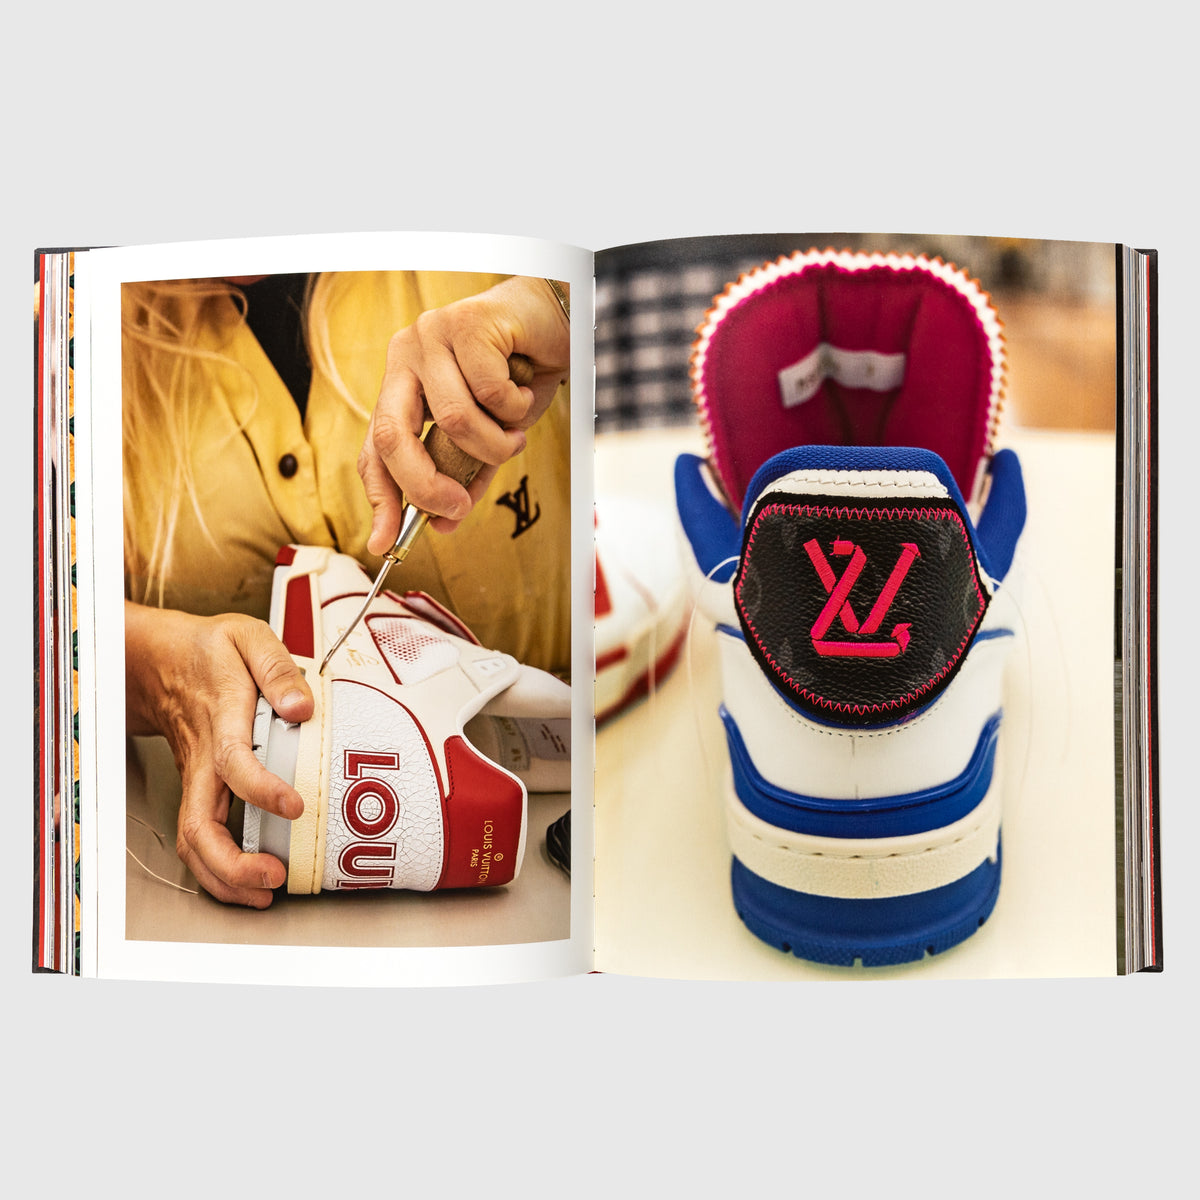 Louis Vuitton shoes Collection - The Shoe Box